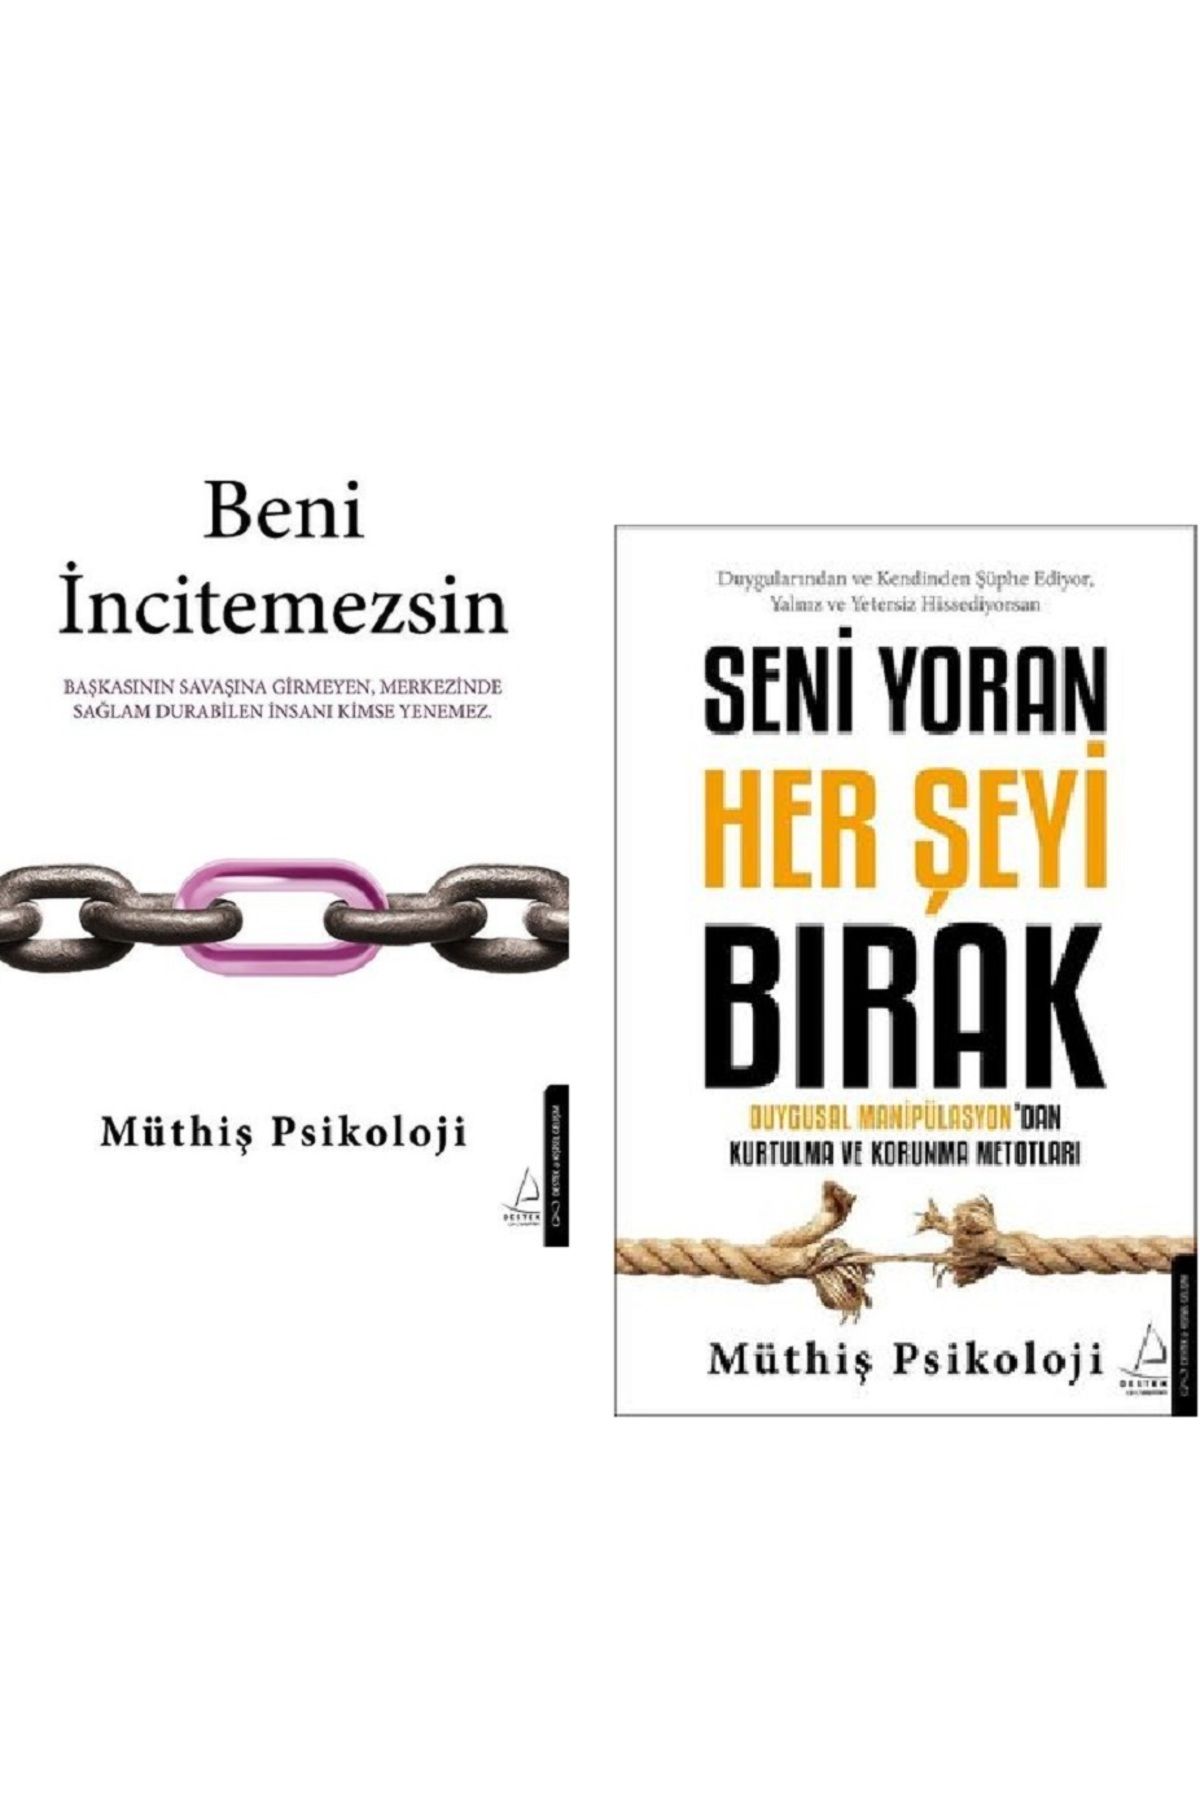 Destek Yayınları Beni İncitemezsin + Seni Yoran Her Şeyi Bırak / Müthiş Psikoloji 2 Kitap Set